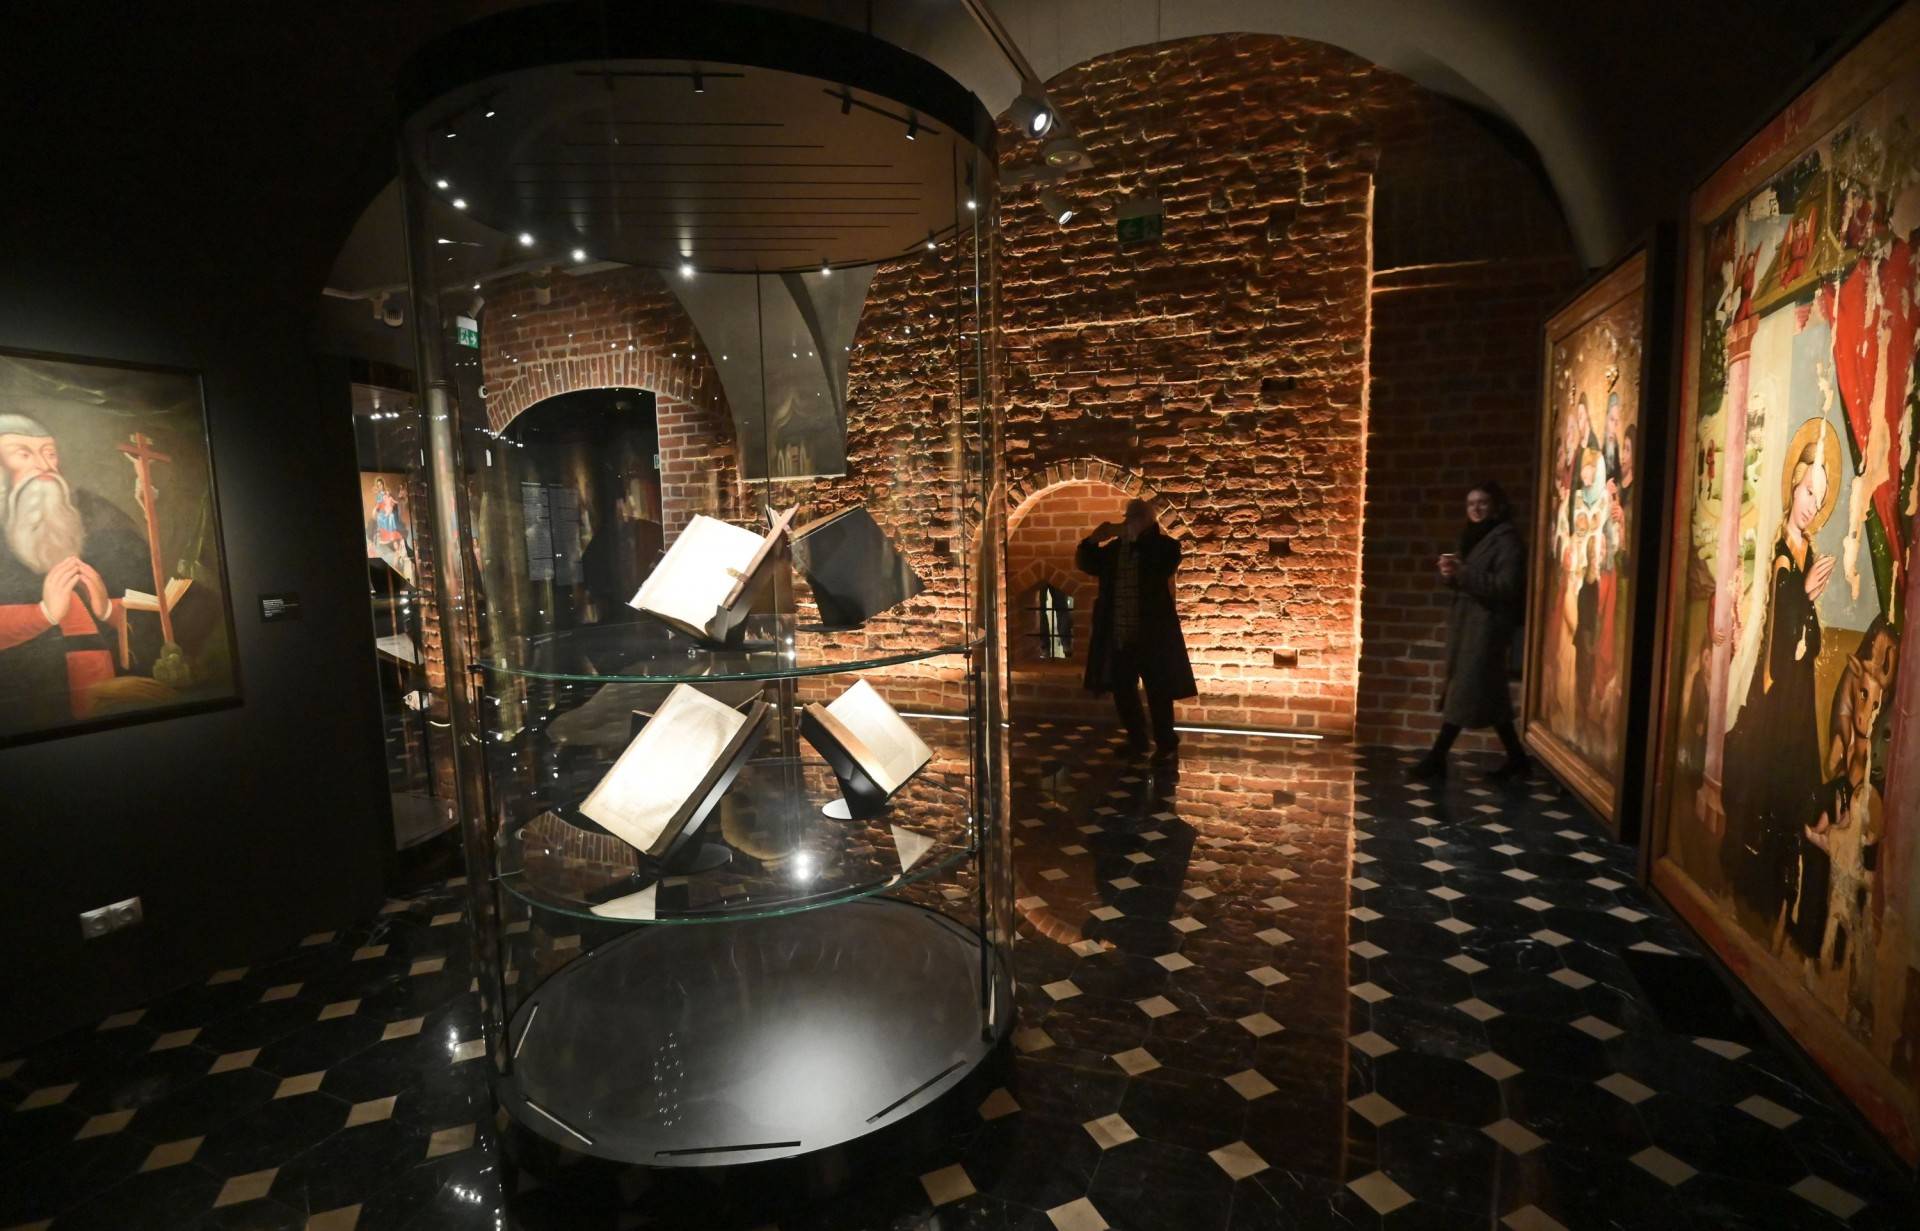 Unikatowe zbiory w labiryncie średniowiecznych piwnic. Można już zwiedzać